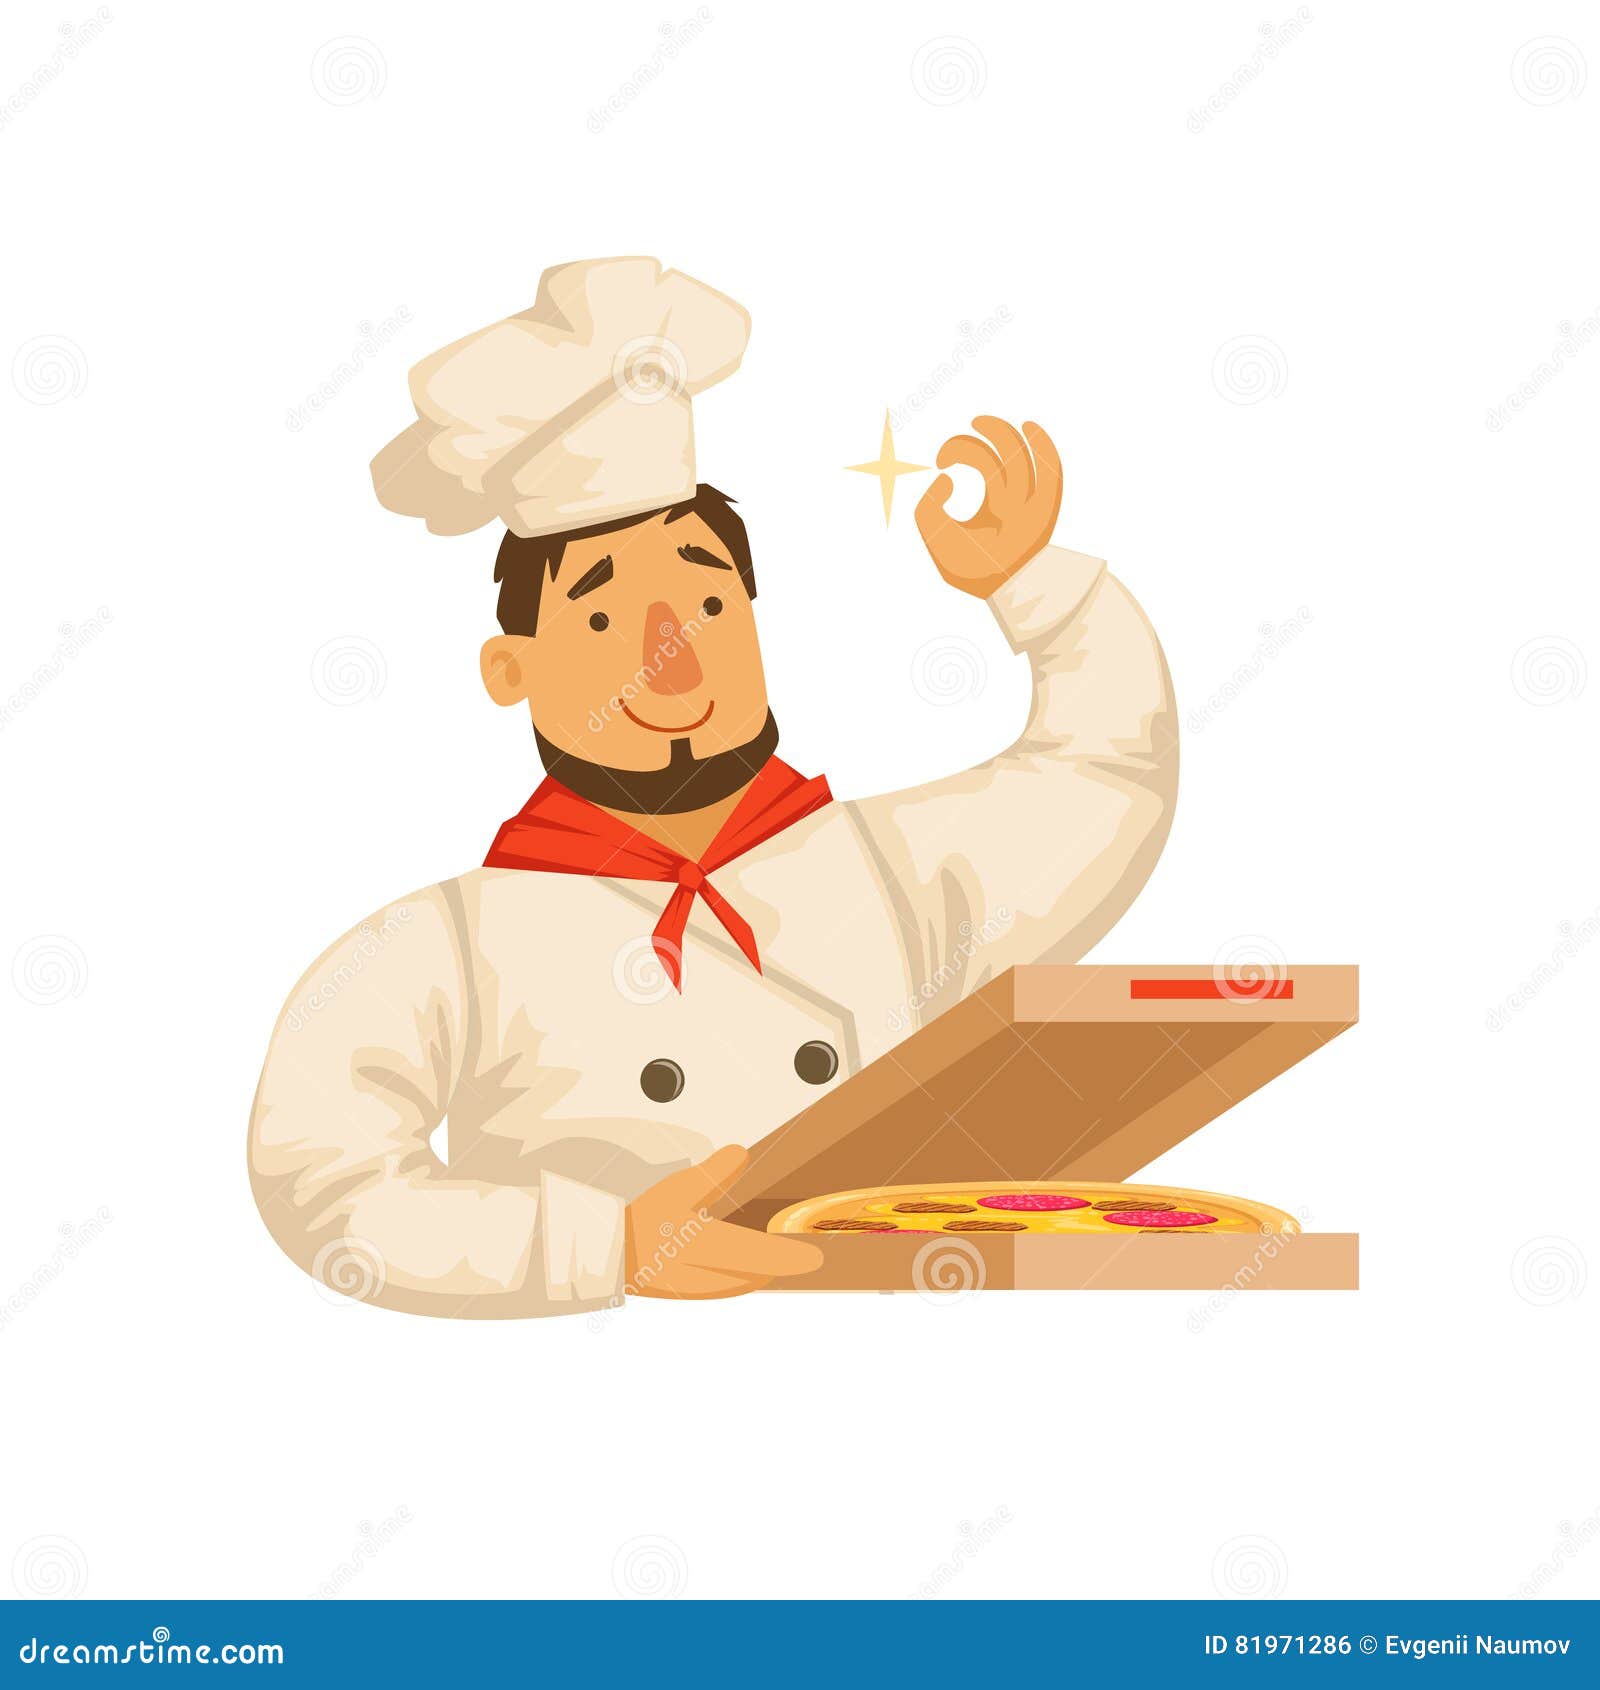 pizza box chef